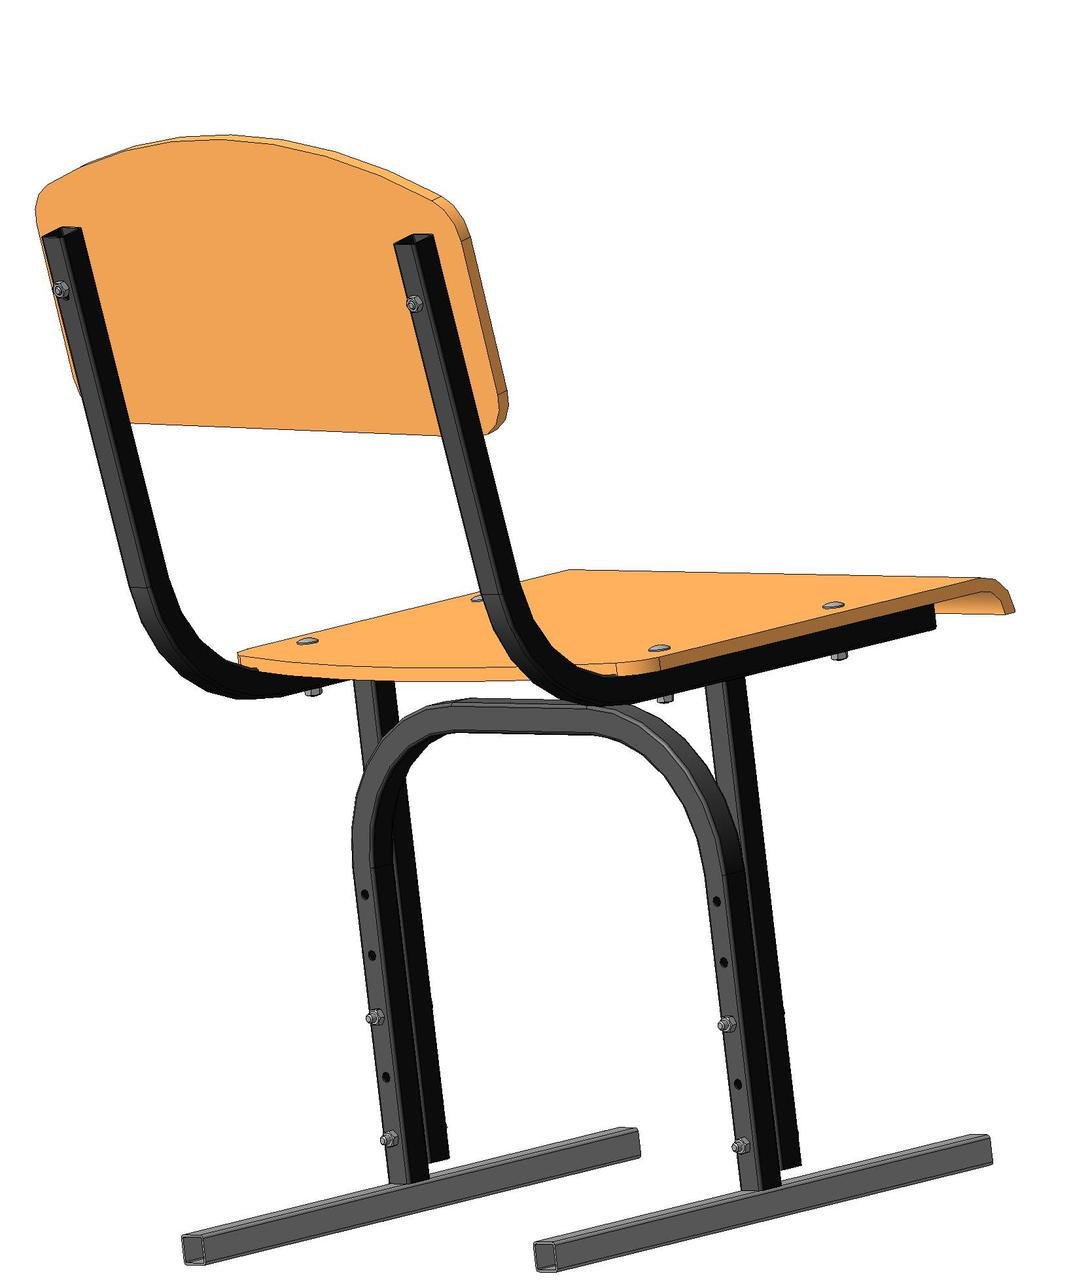 Стул для школьника регулируемый по высоте | Купить детский растущий стул